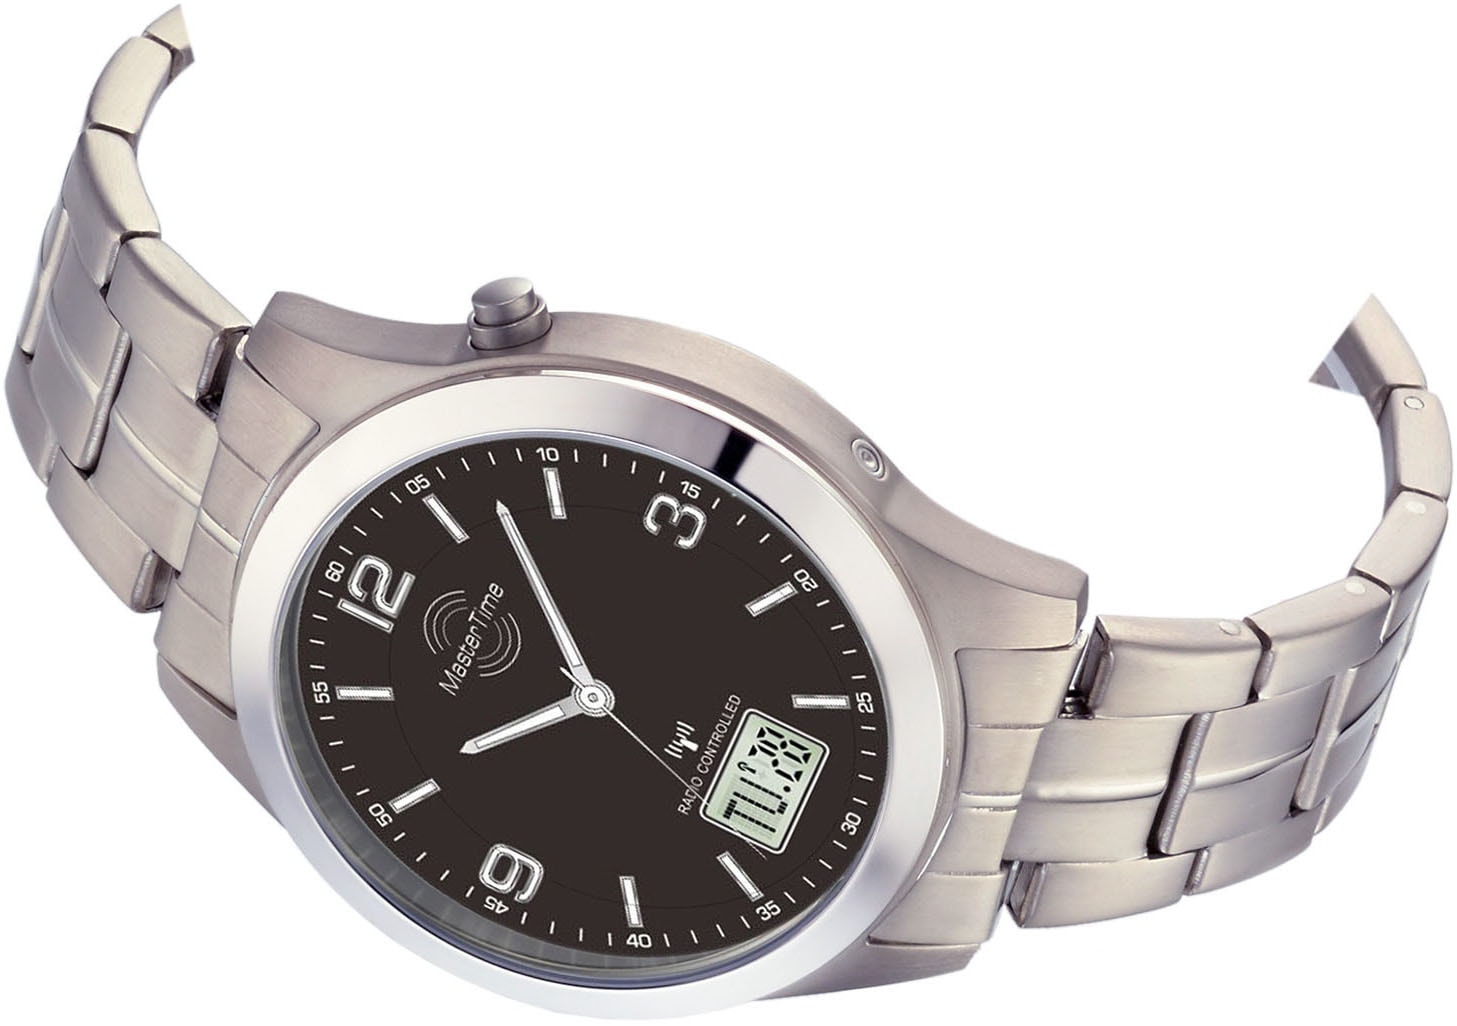 MASTER TIME Funkuhr »MTGT-10349-22M«, Armbanduhr, Quarzuhr, Herrenuhr, Datum, Leuchtzeiger